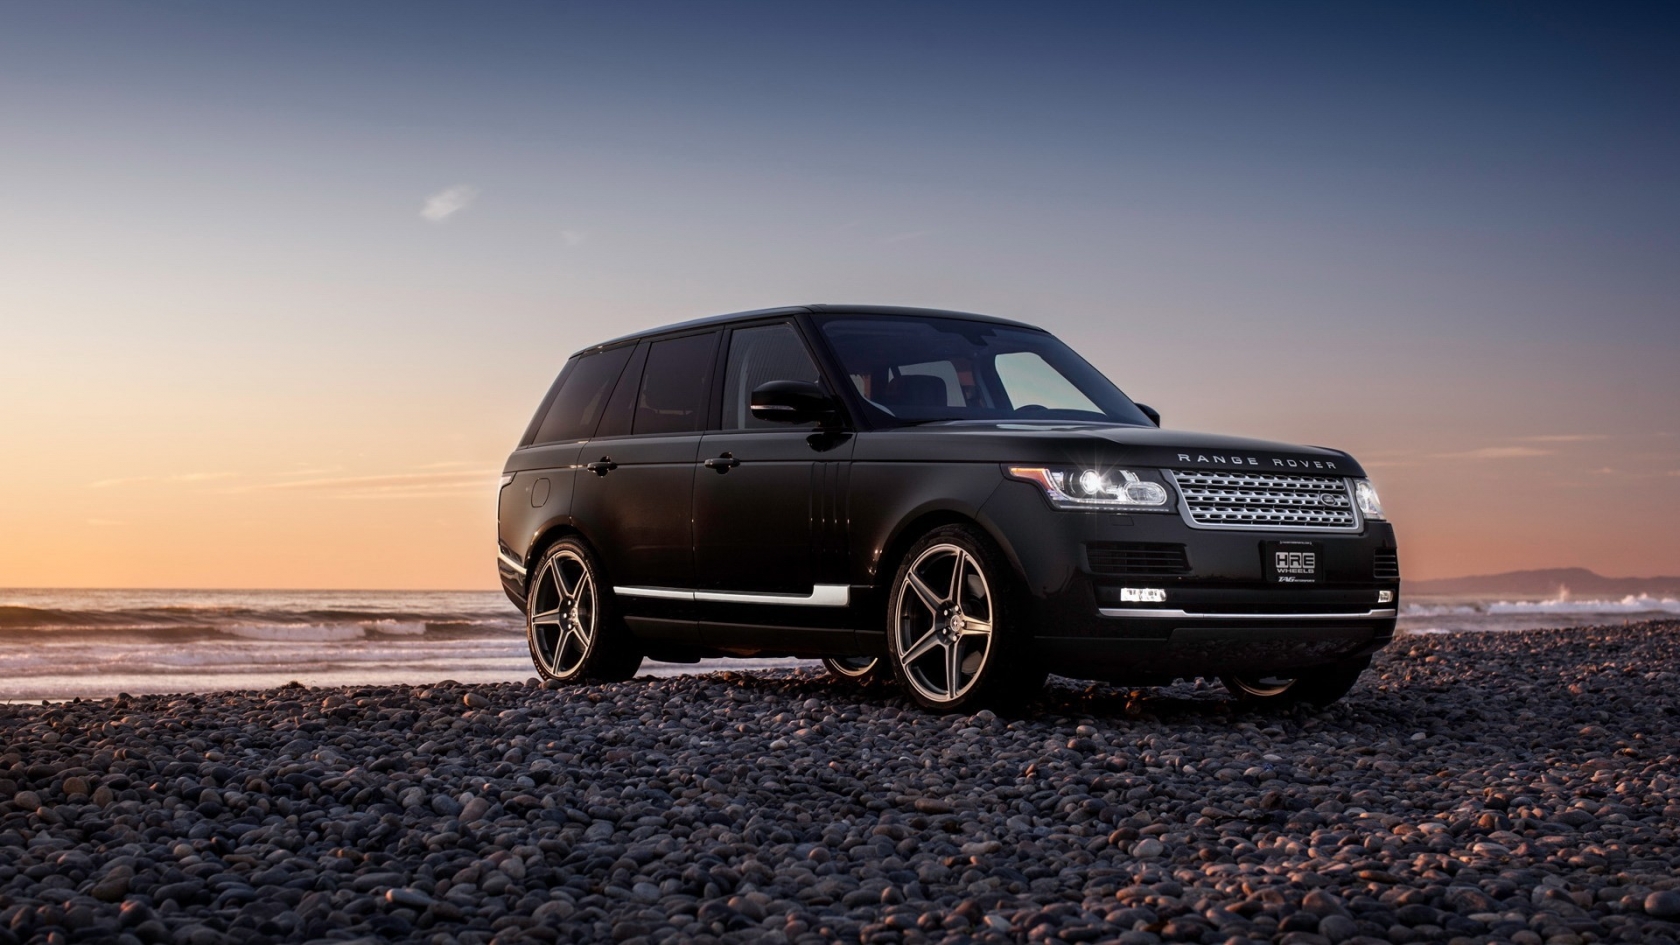 New Black Range Rover for 1680 x 945 HDTV resolution